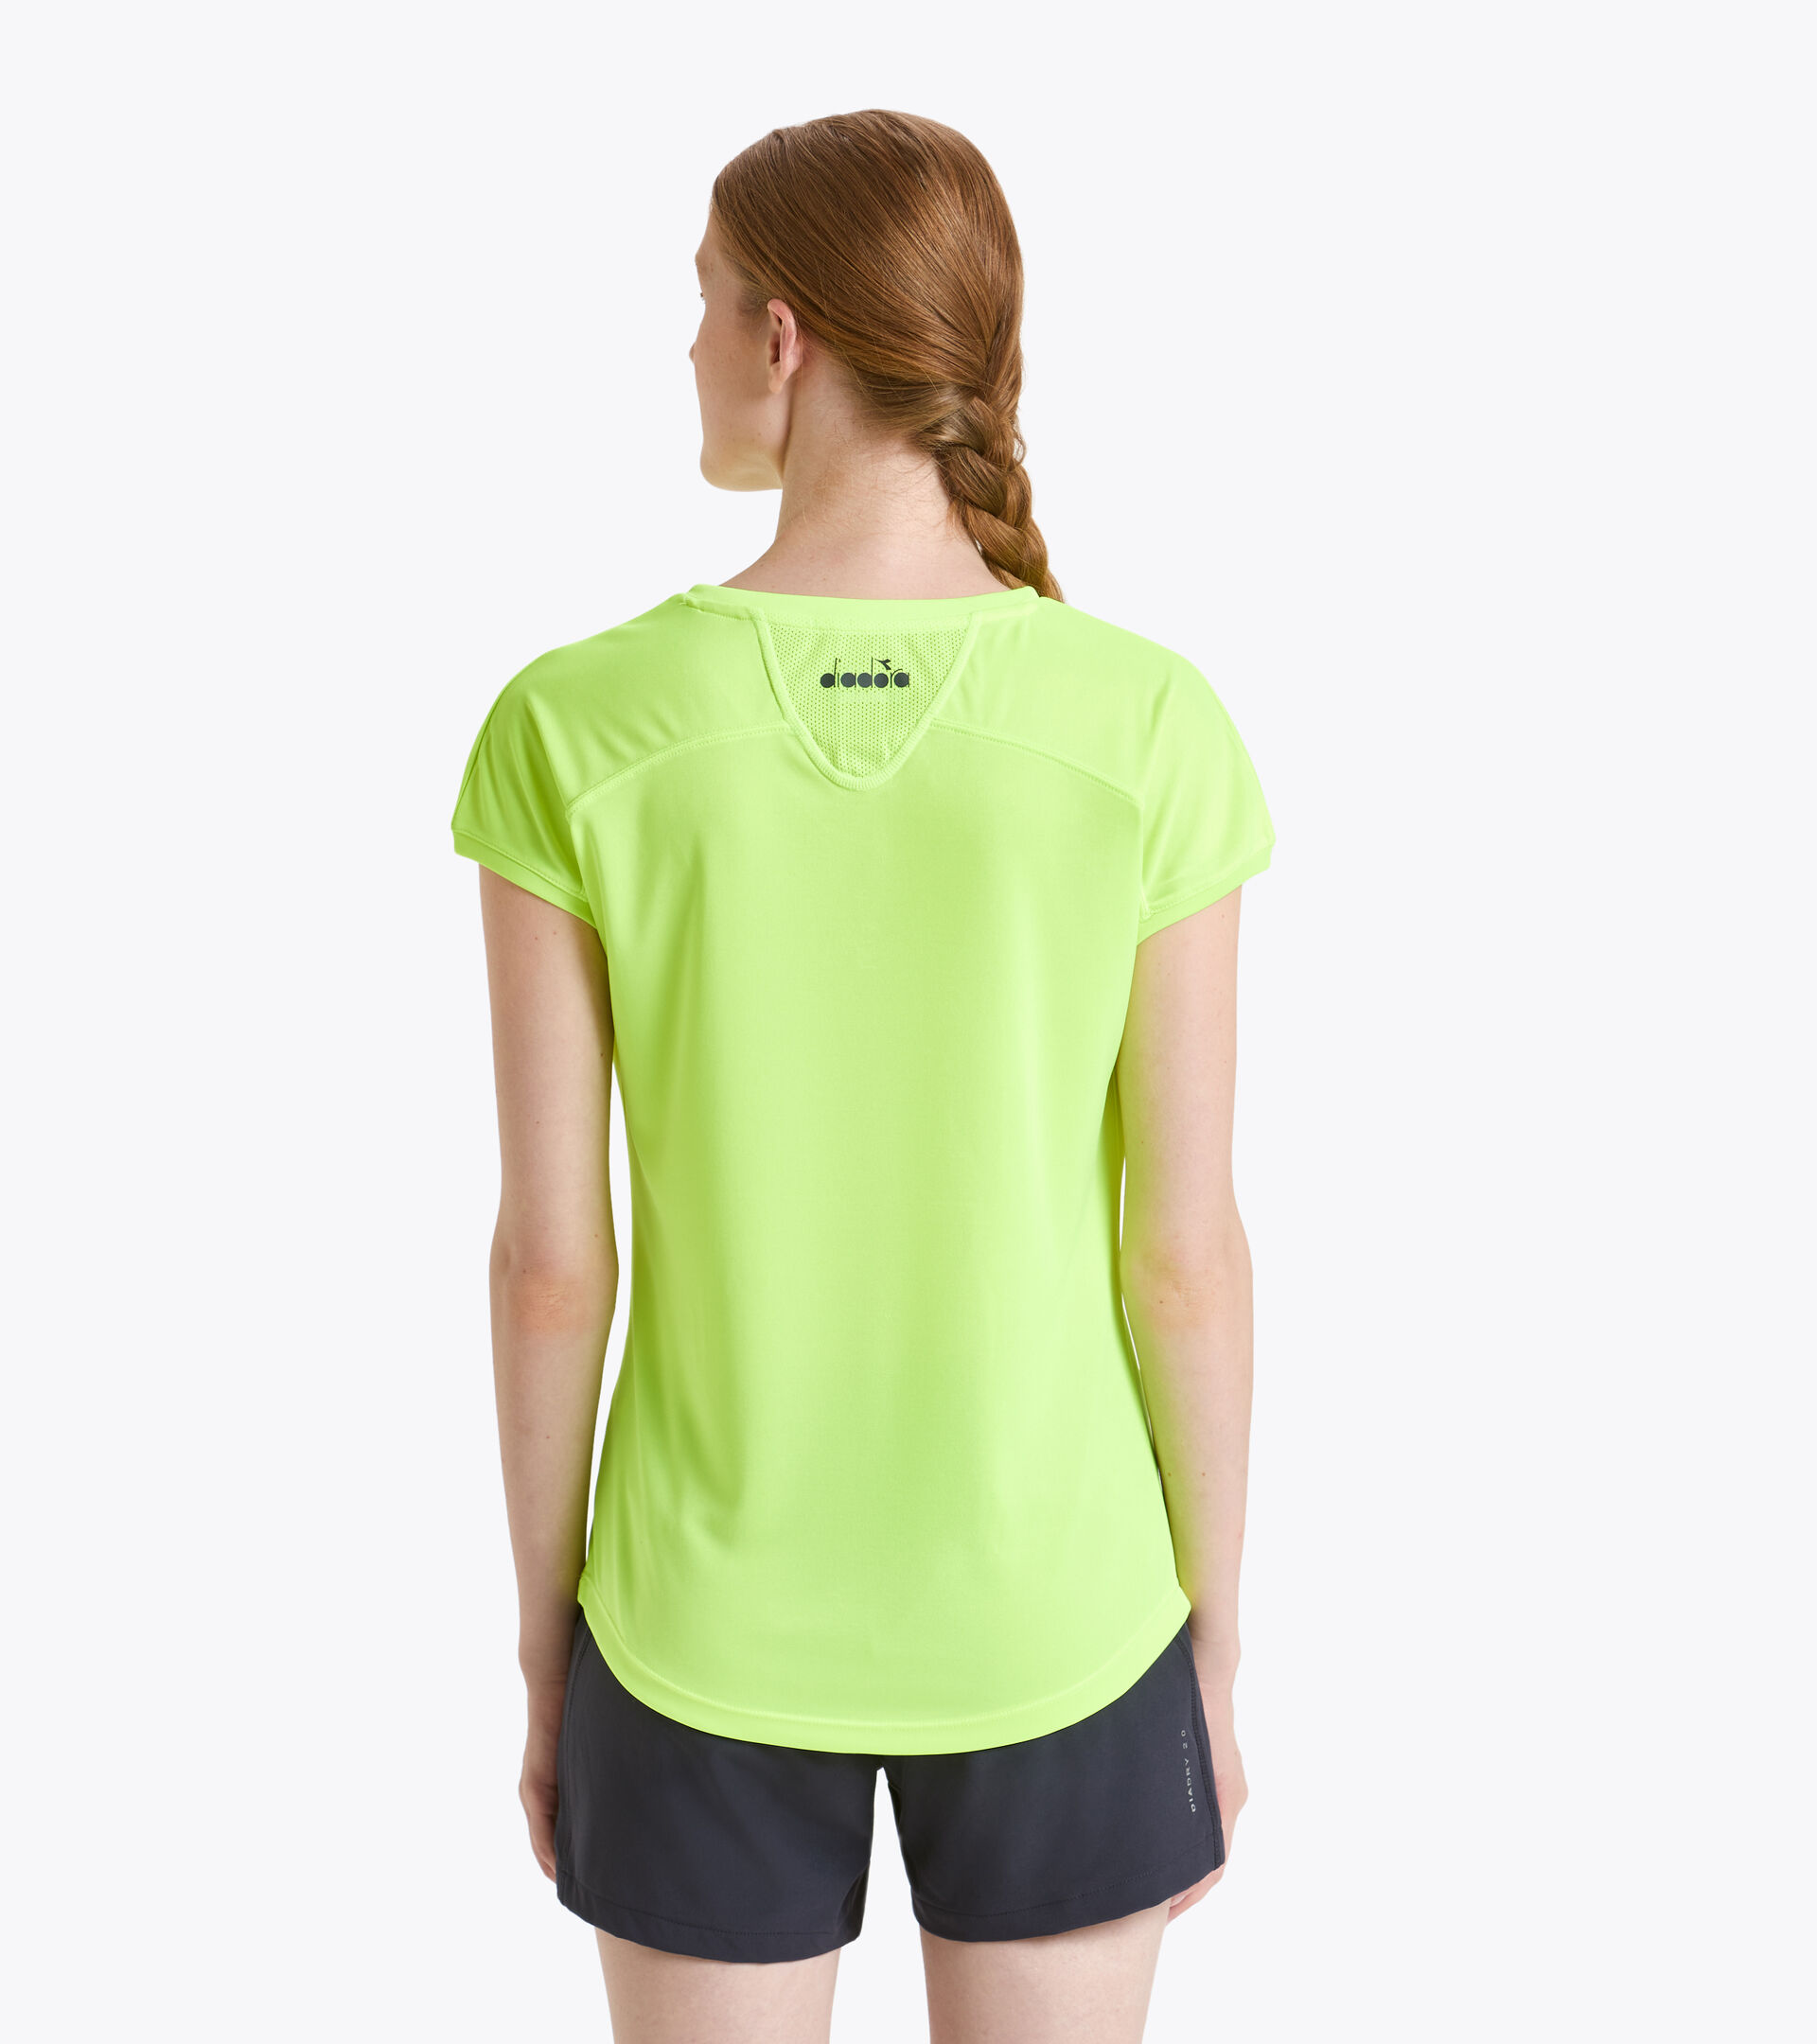 Tennis T-shirt - Women L. T-SHIRT TEAM FLUO YELLOW DD - Diadora